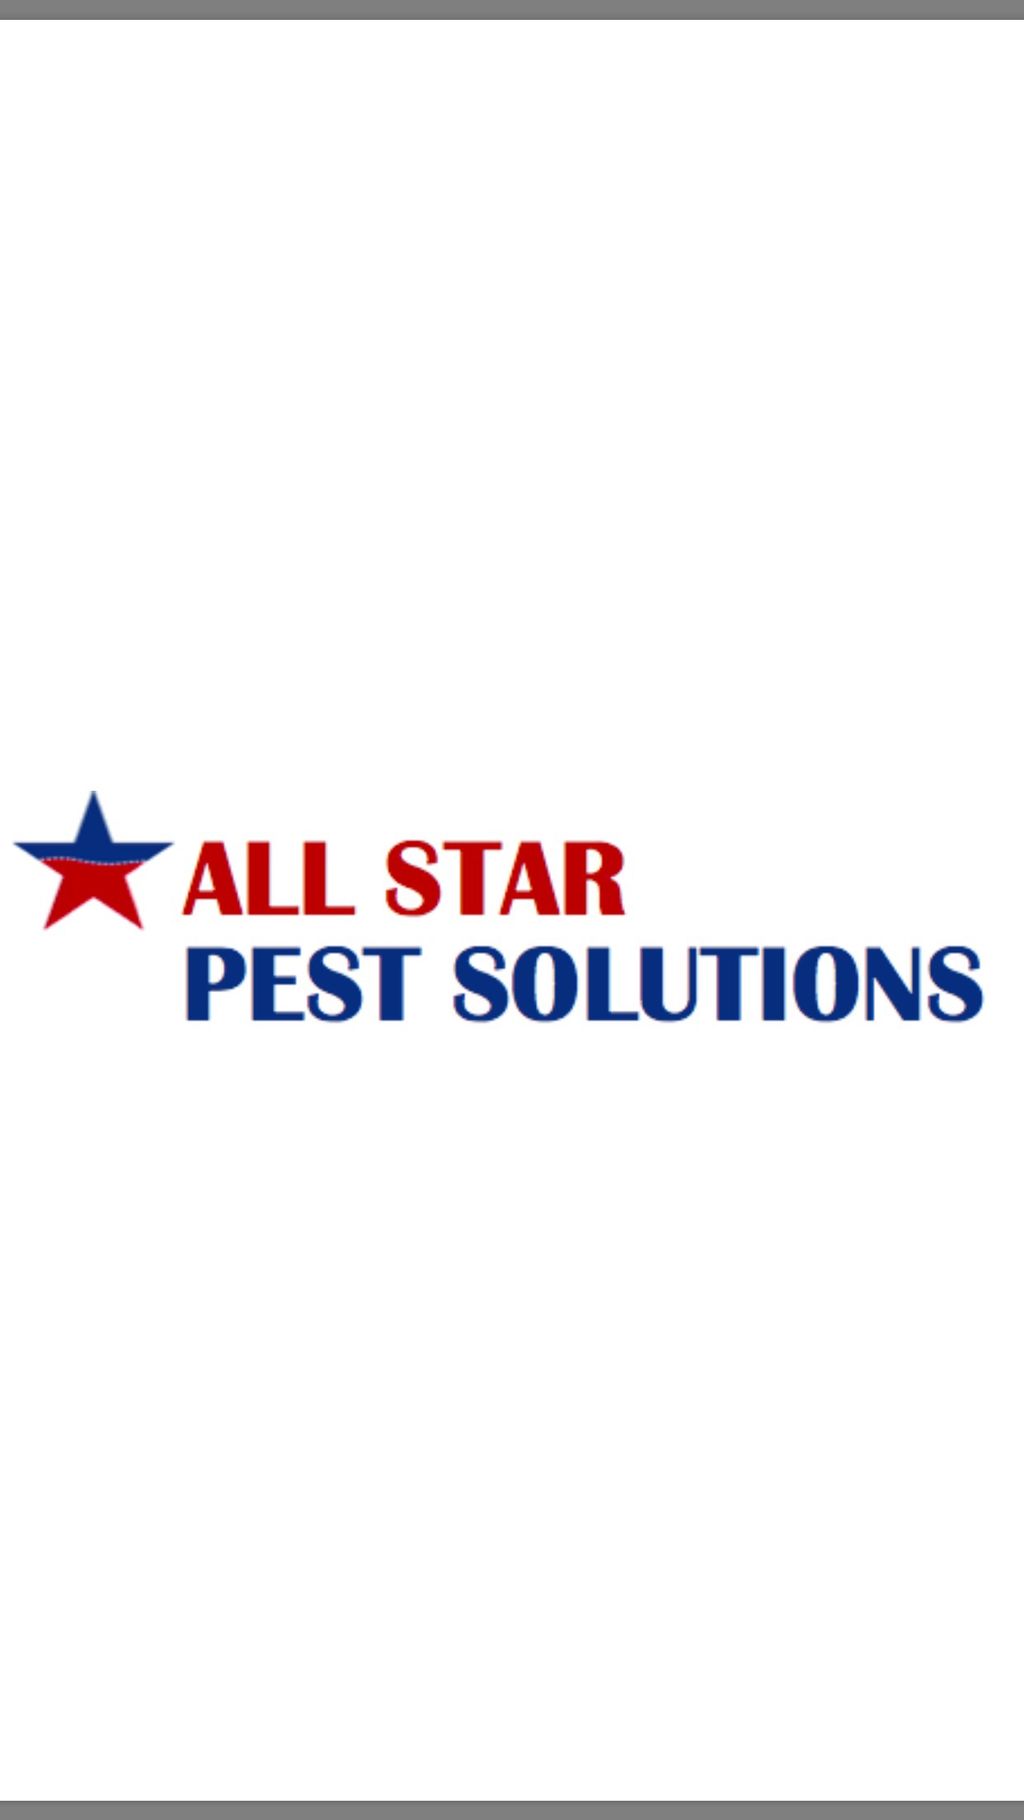 All Star Pest Solutions | Albany, NY | Thumbtack